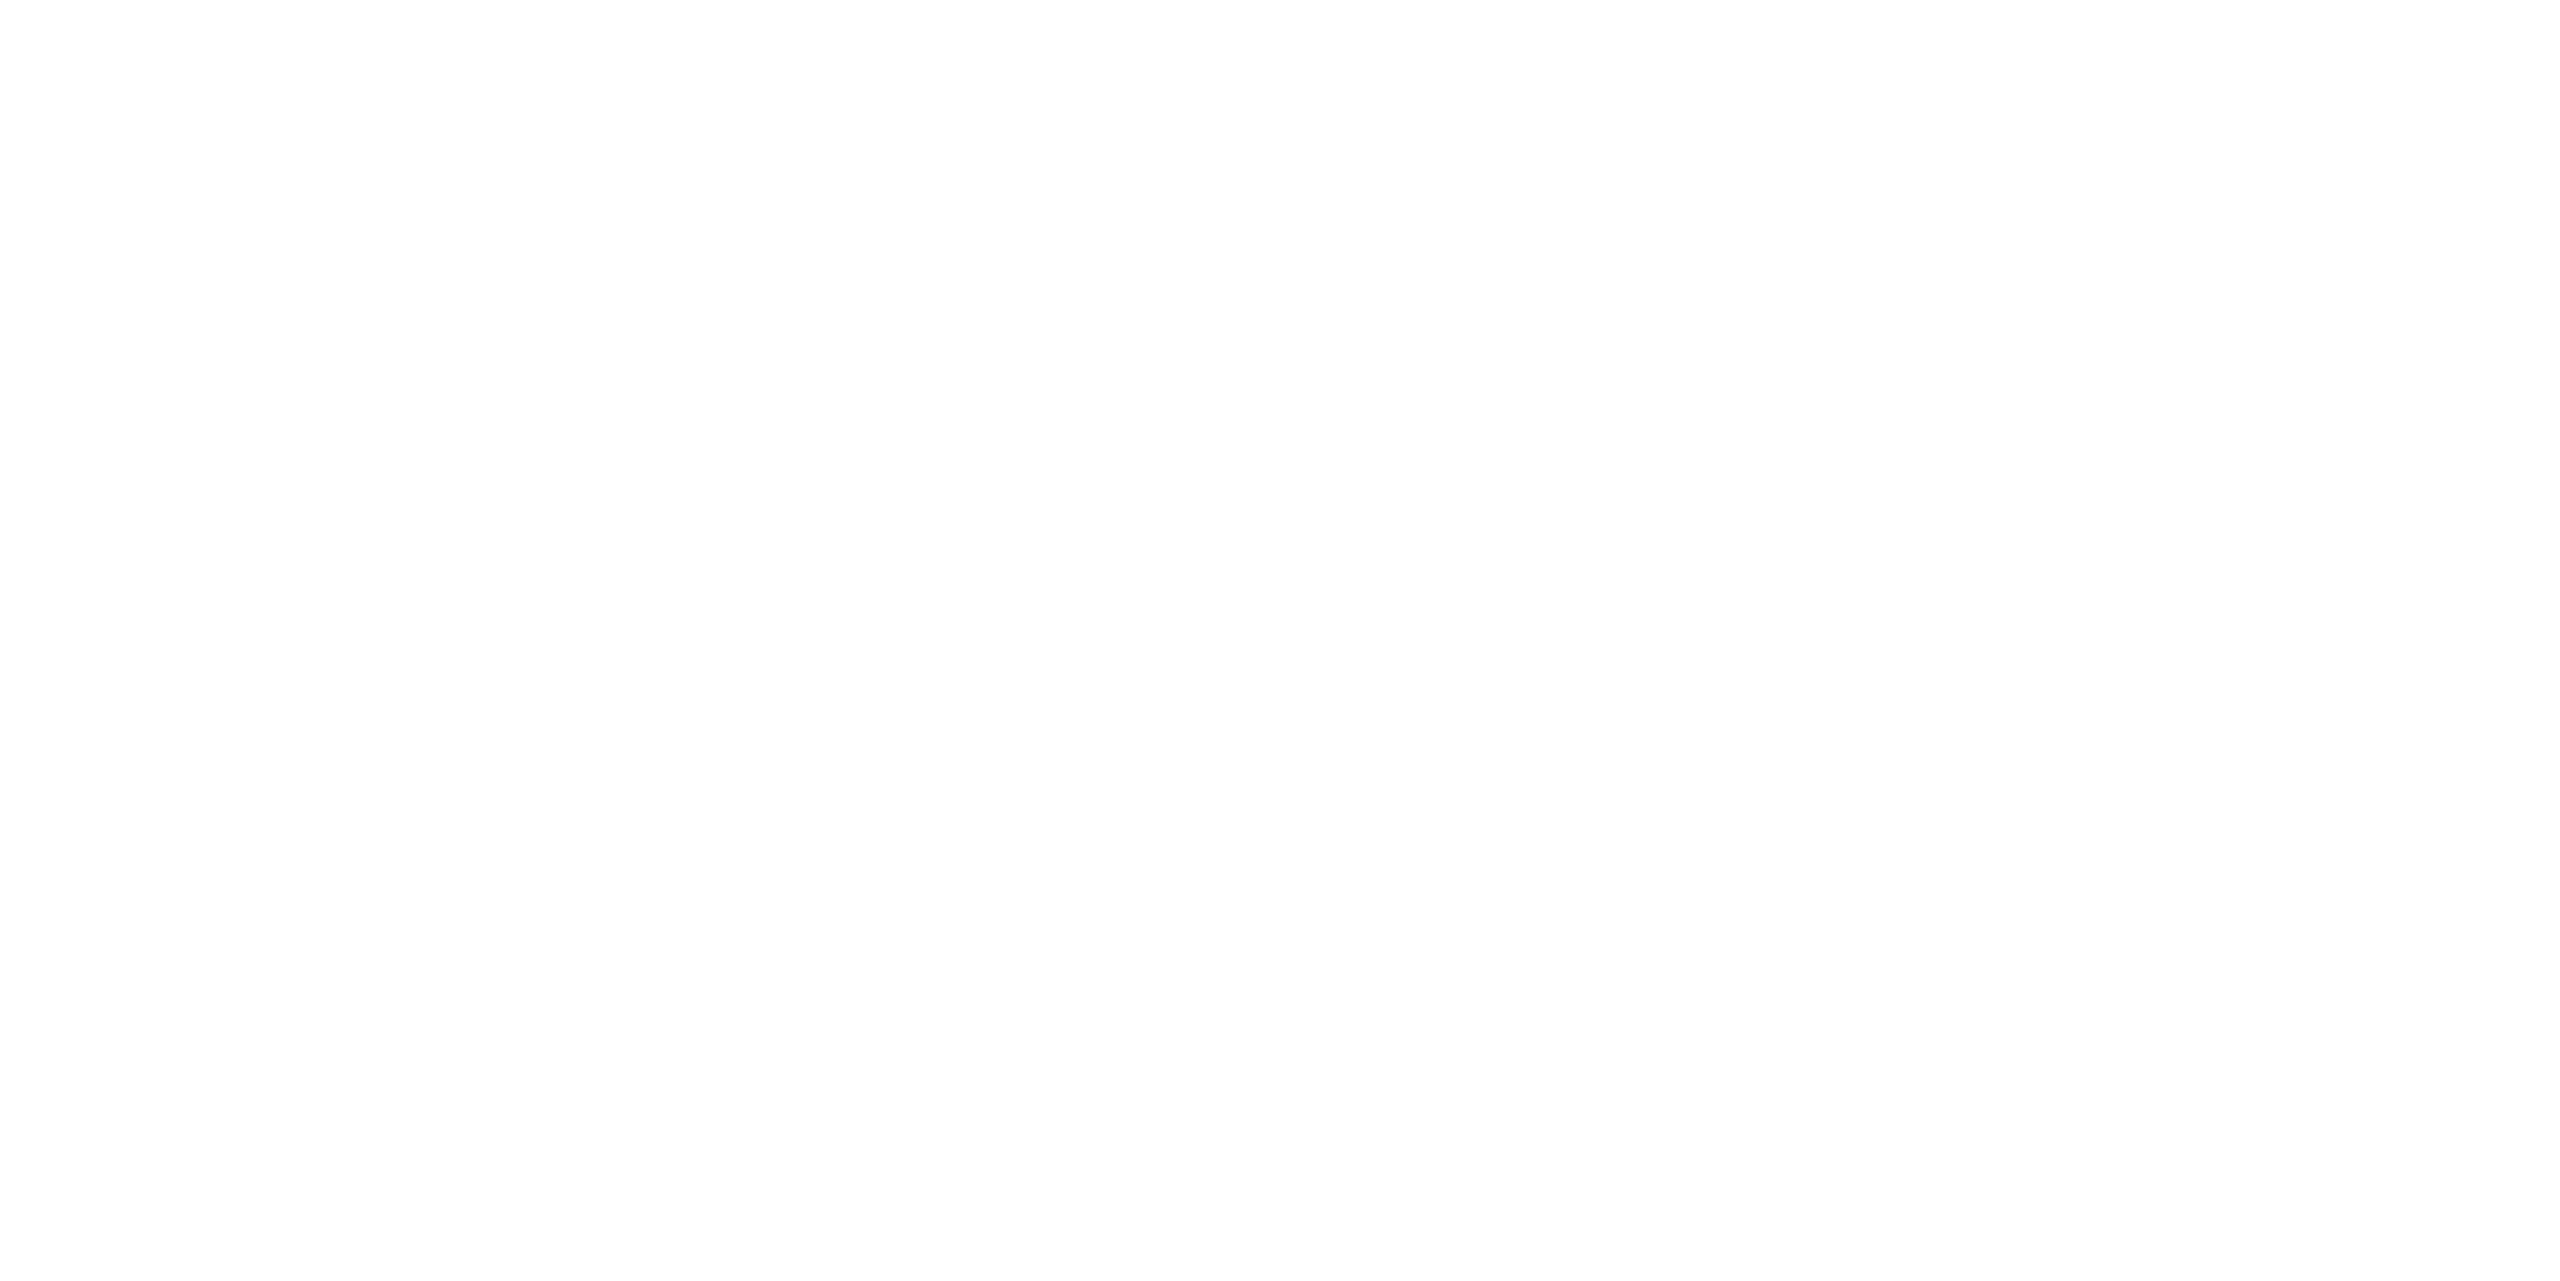 The Butler logo